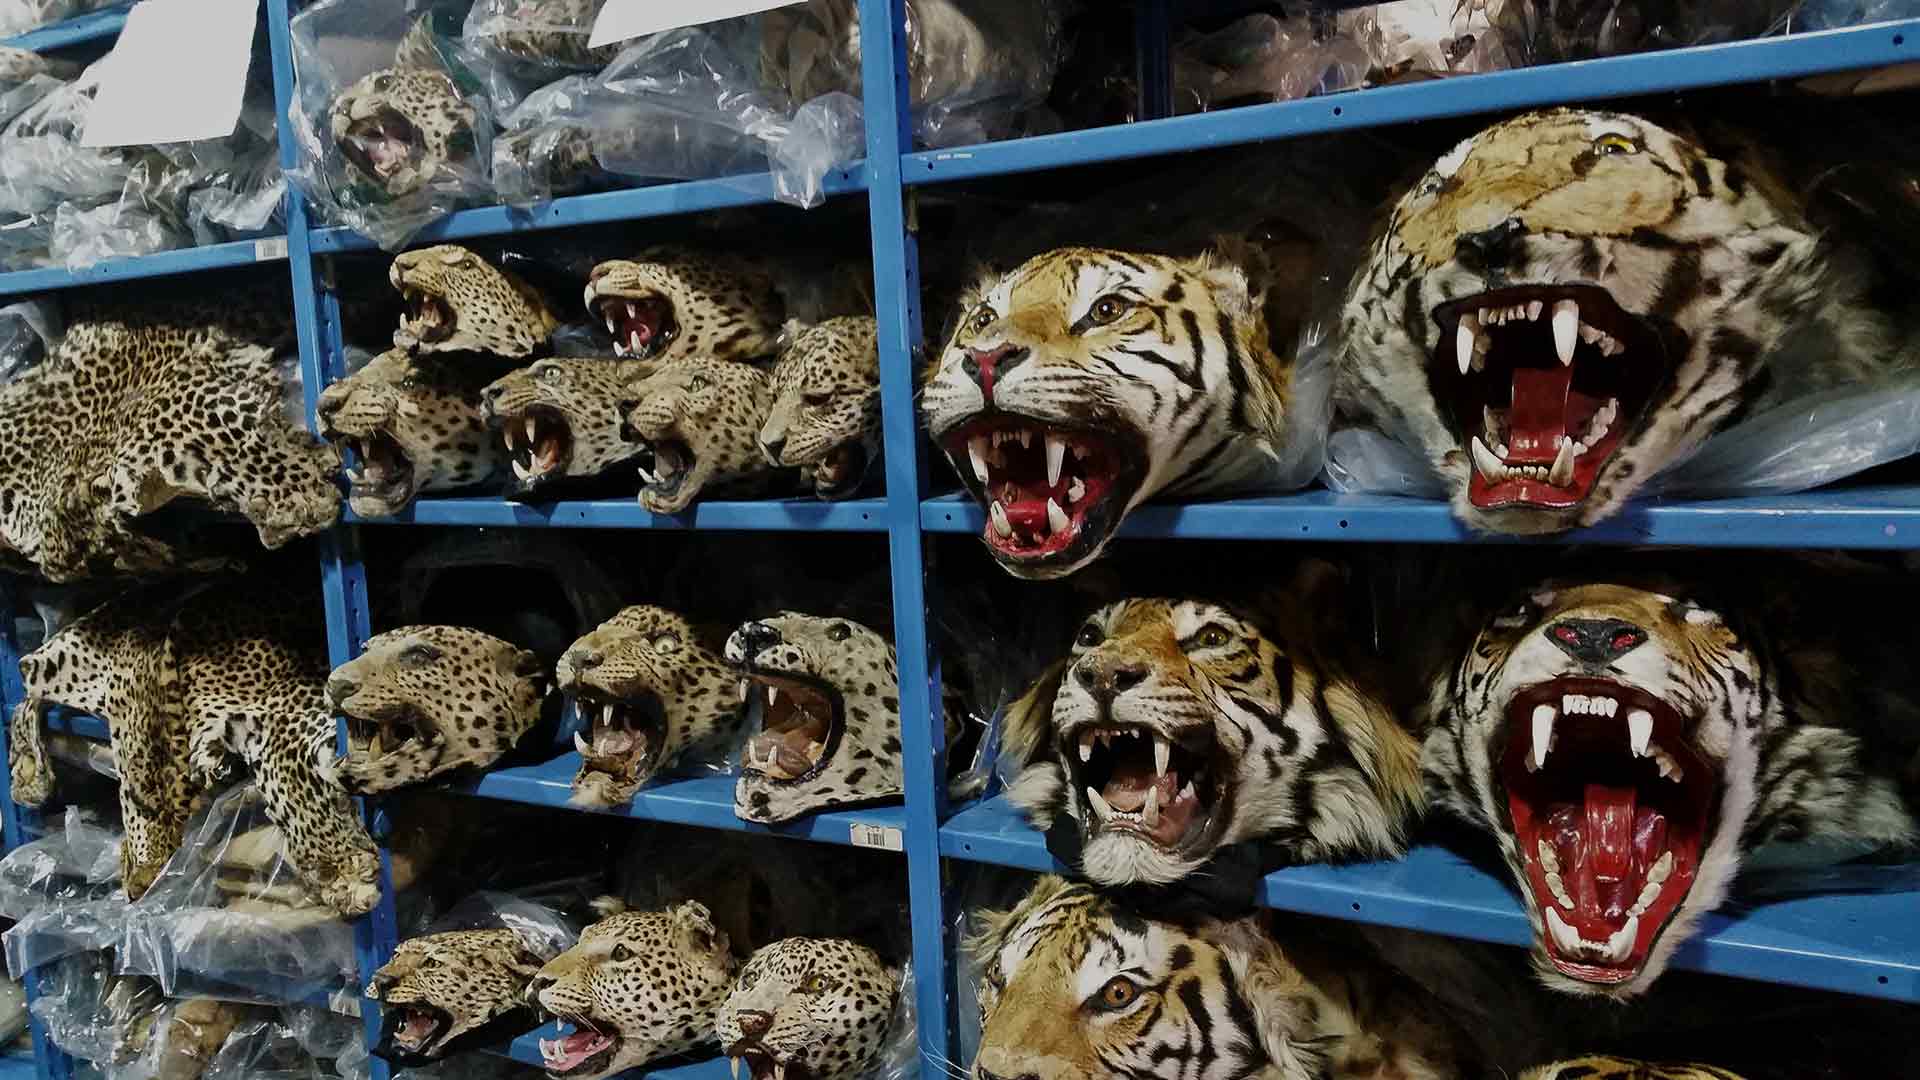 Bangladesh is becoming a tiger parts consumer